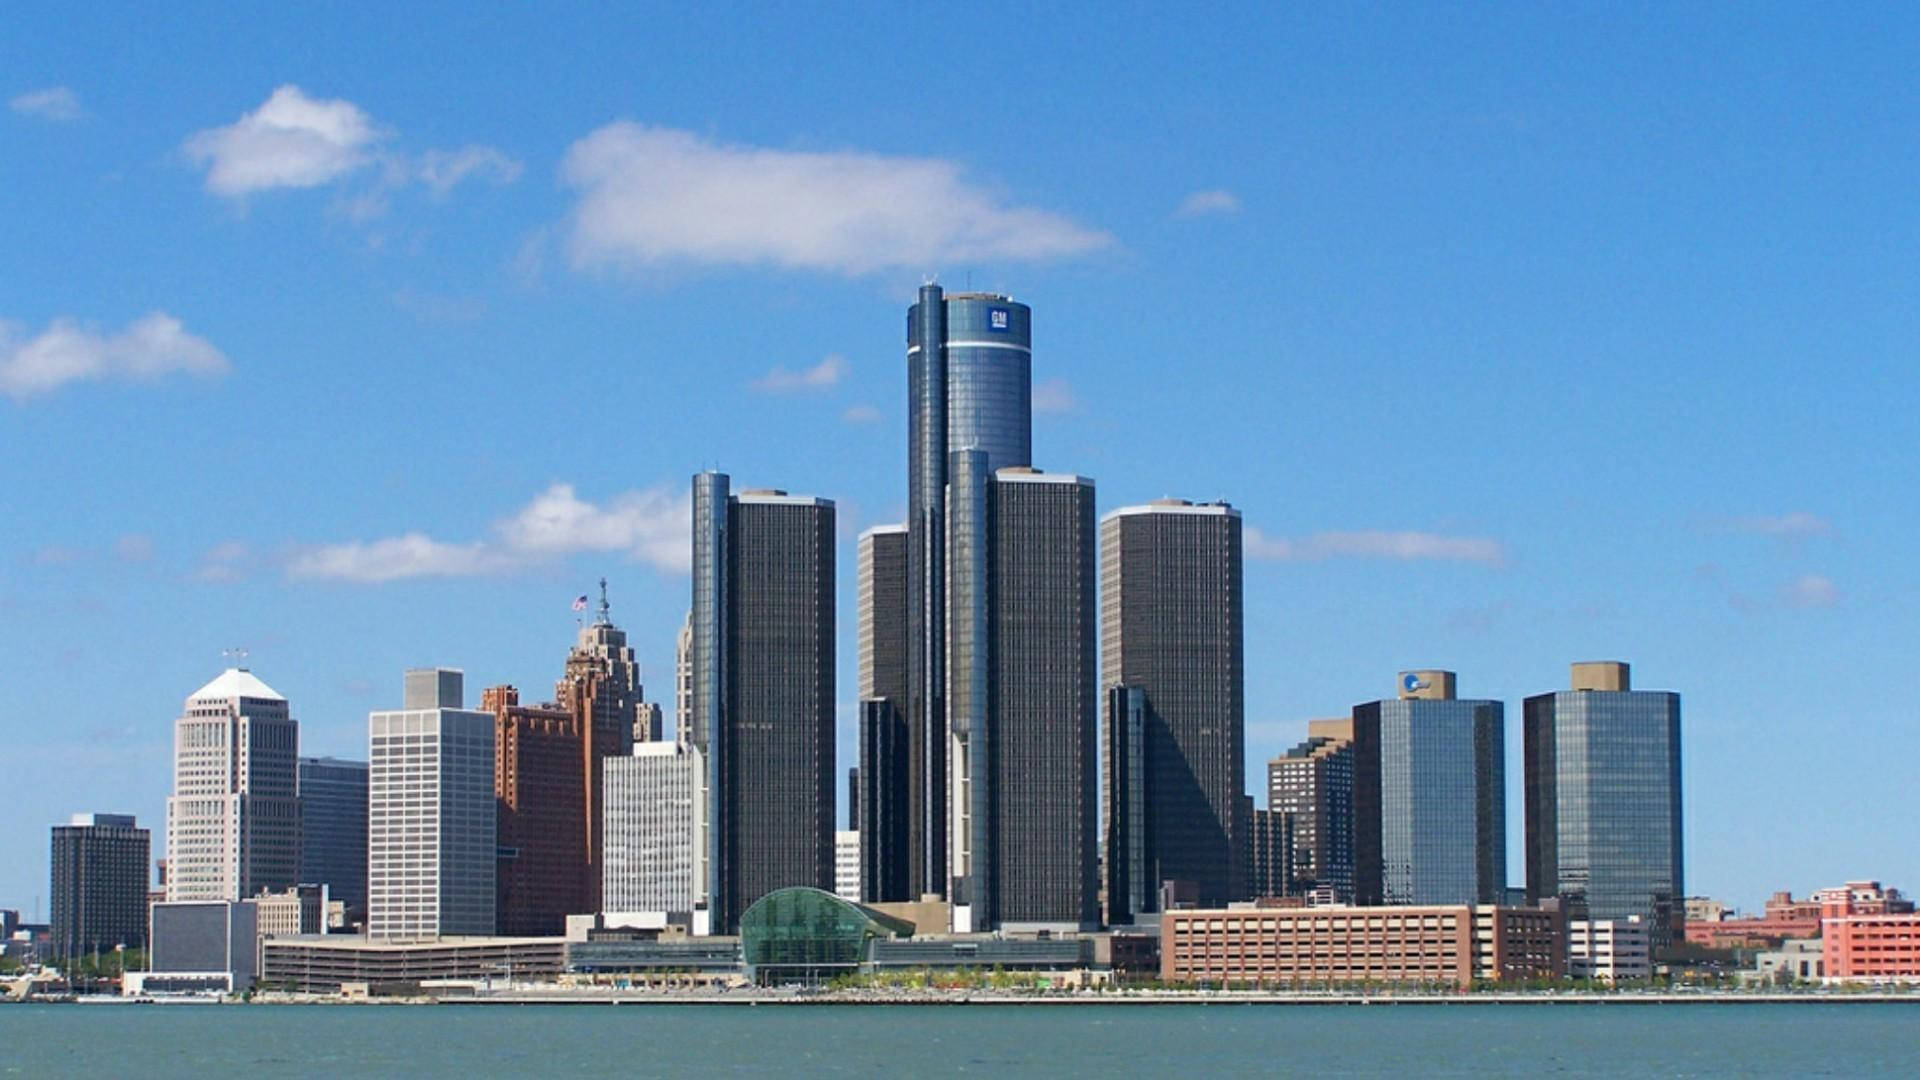 Detroit General Motors Renaissance Center